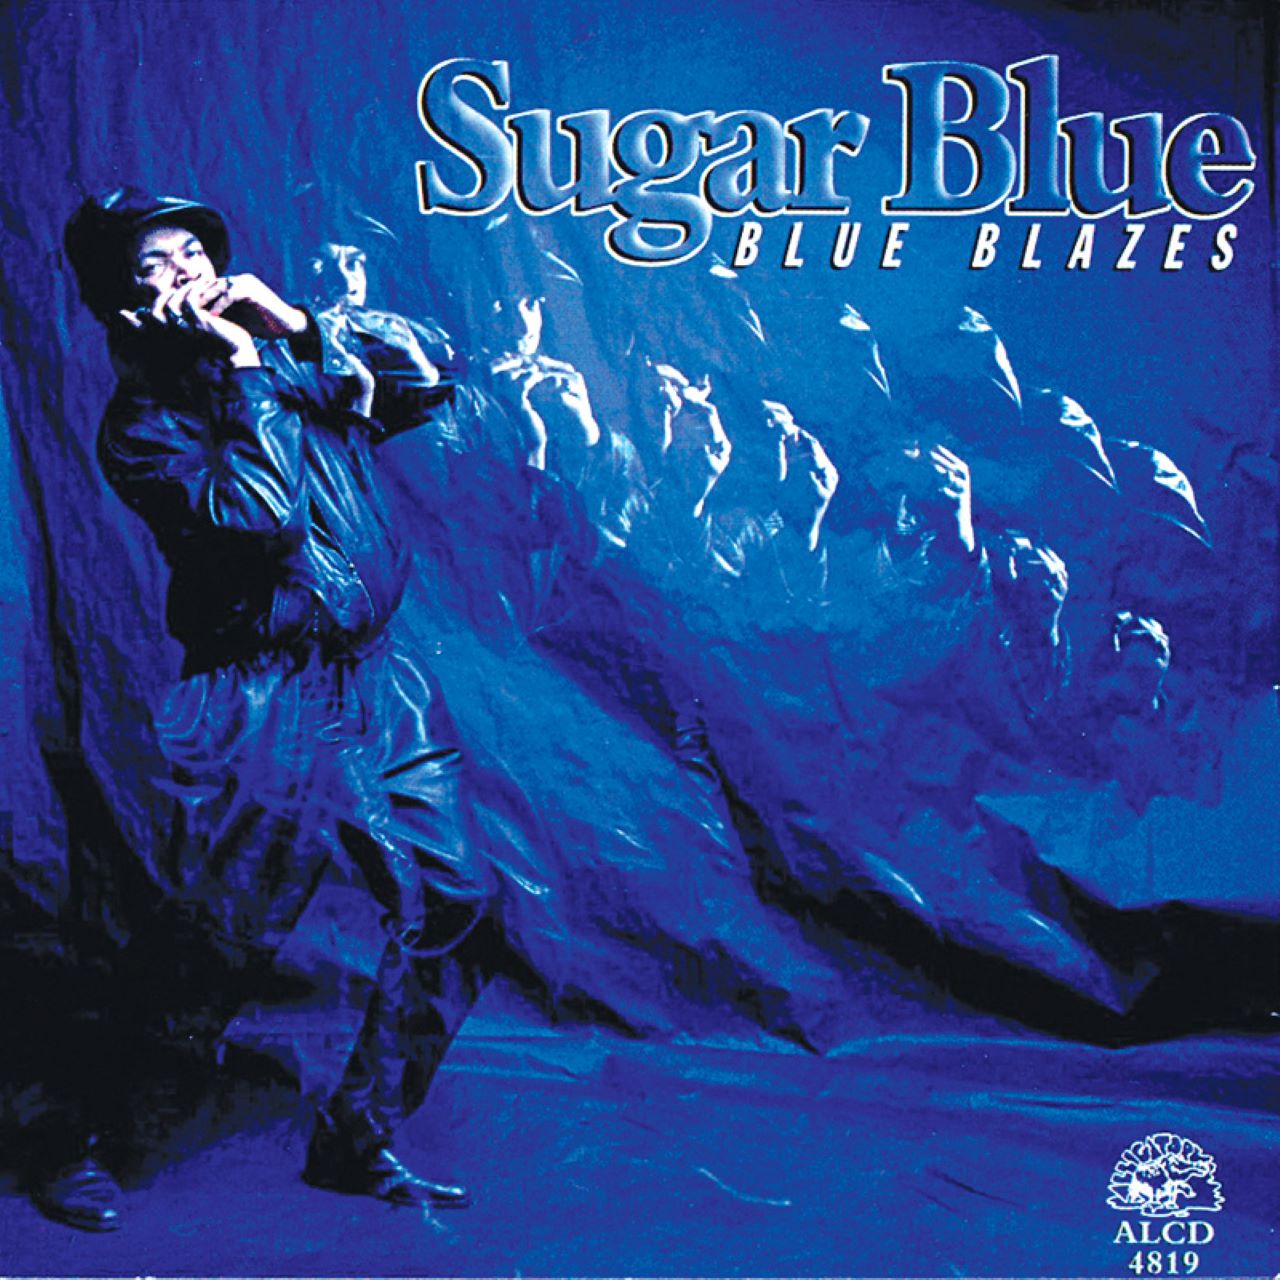 Sugar Blue – Blue Blazes cover album